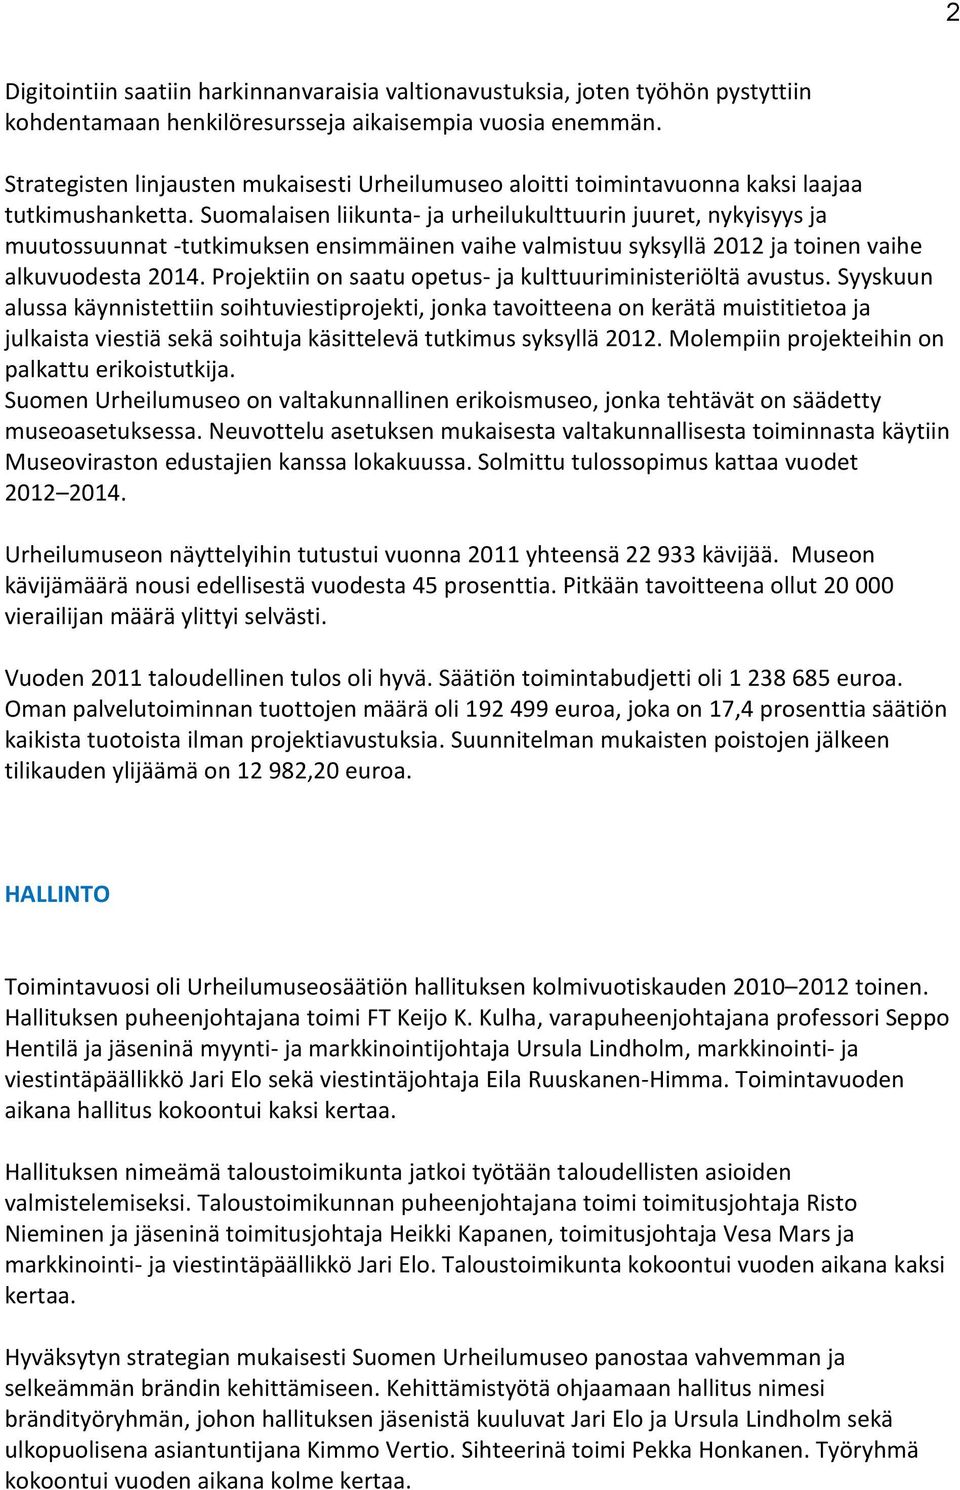 Suomalaisen liikunta- ja urheilukulttuurin juuret, nykyisyys ja muutossuunnat -tutkimuksen ensimmäinen vaihe valmistuu syksyllä 2012 ja toinen vaihe alkuvuodesta 2014.